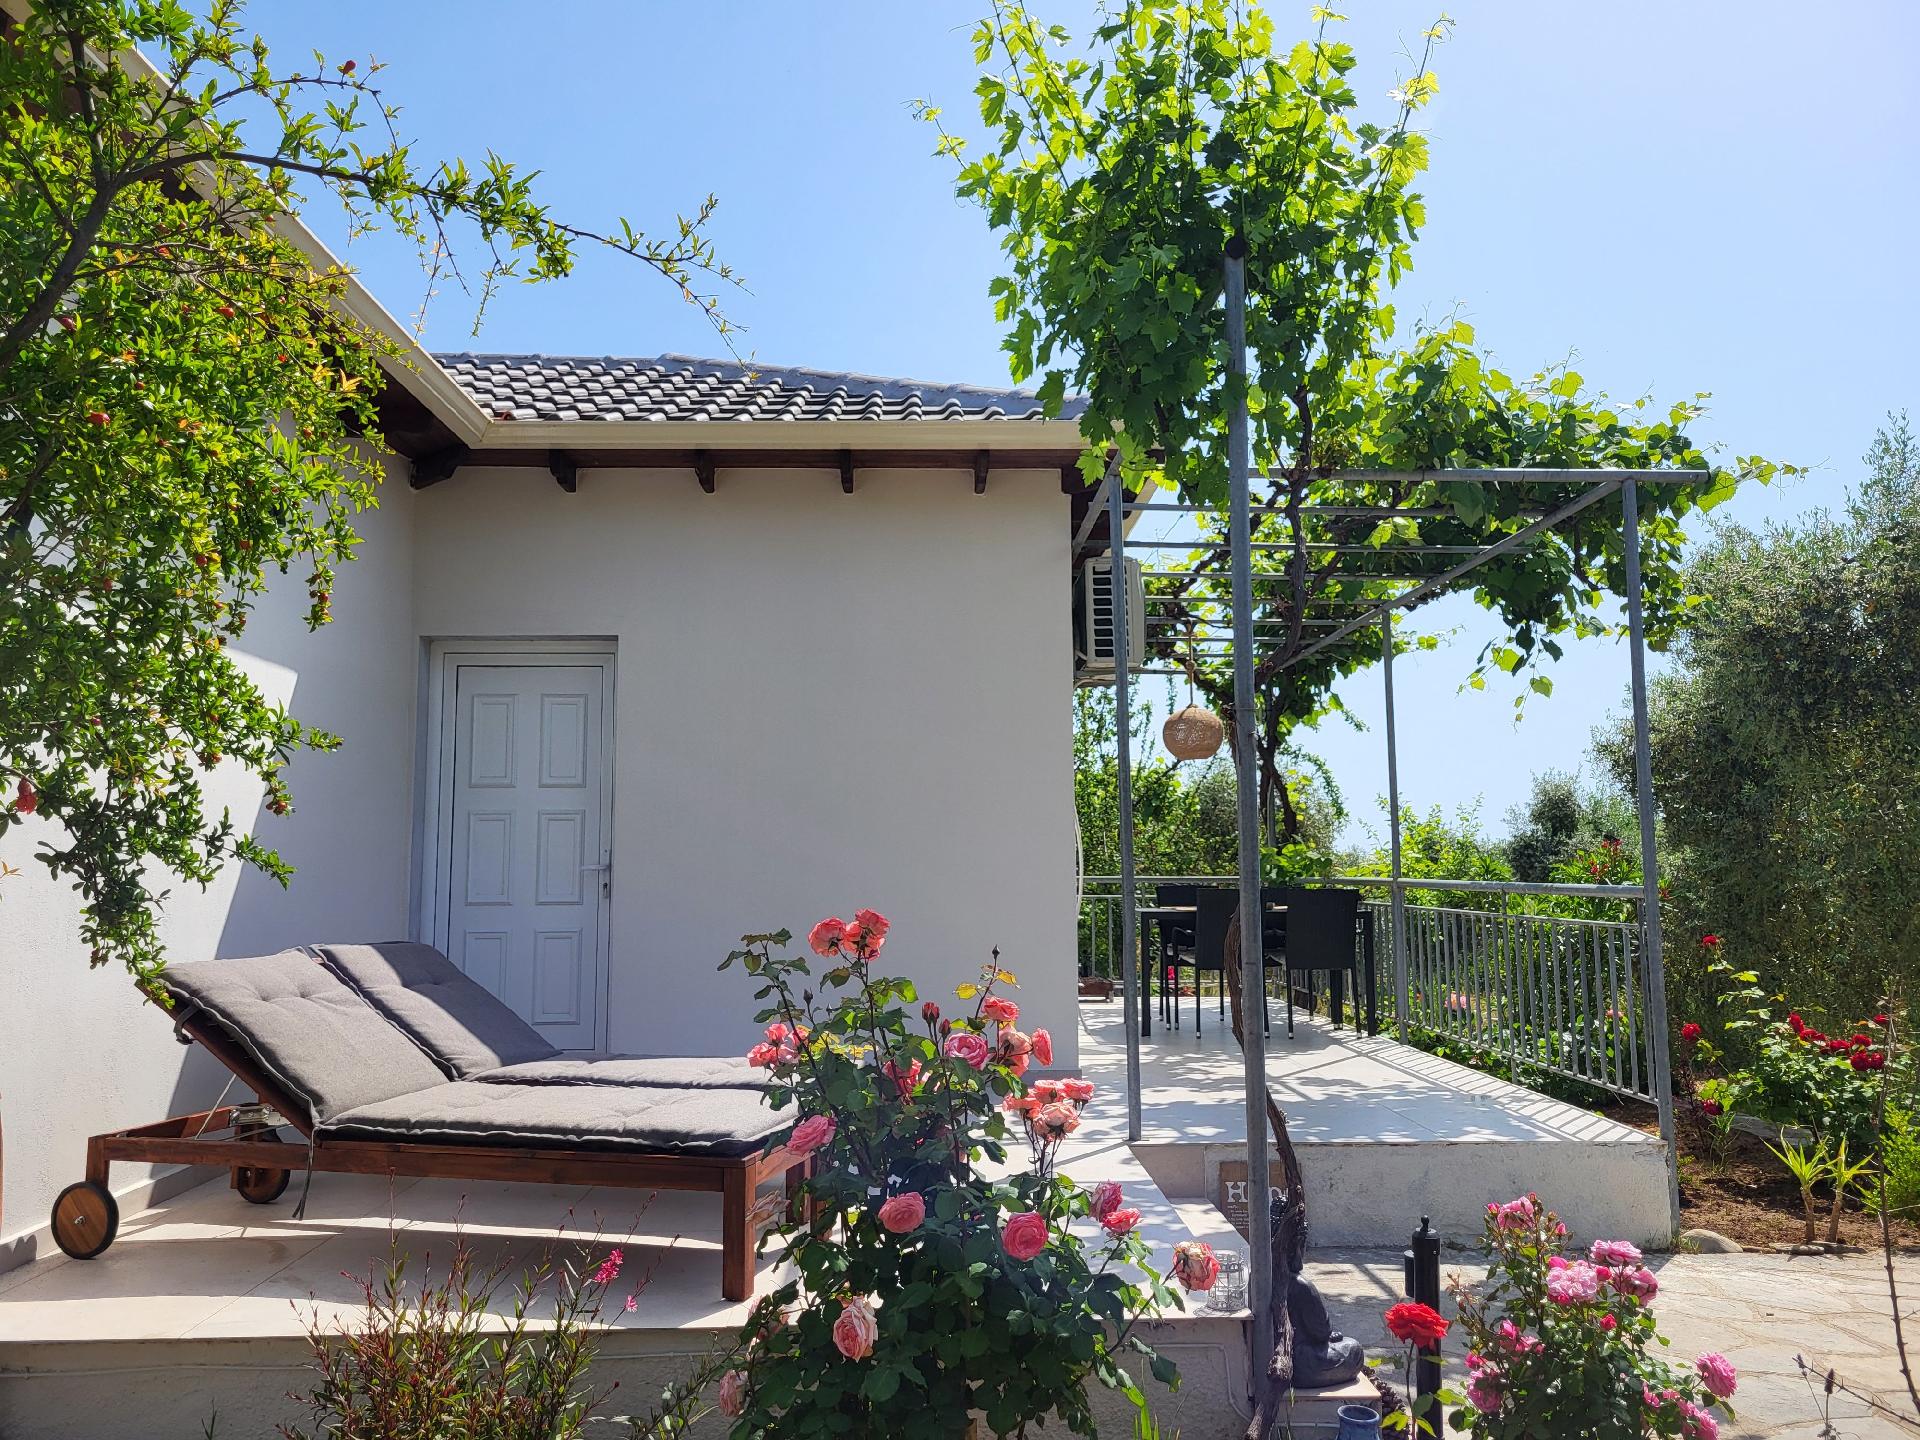 Ferienhaus in Thasos mit Großer Terrasse  in Griechenland